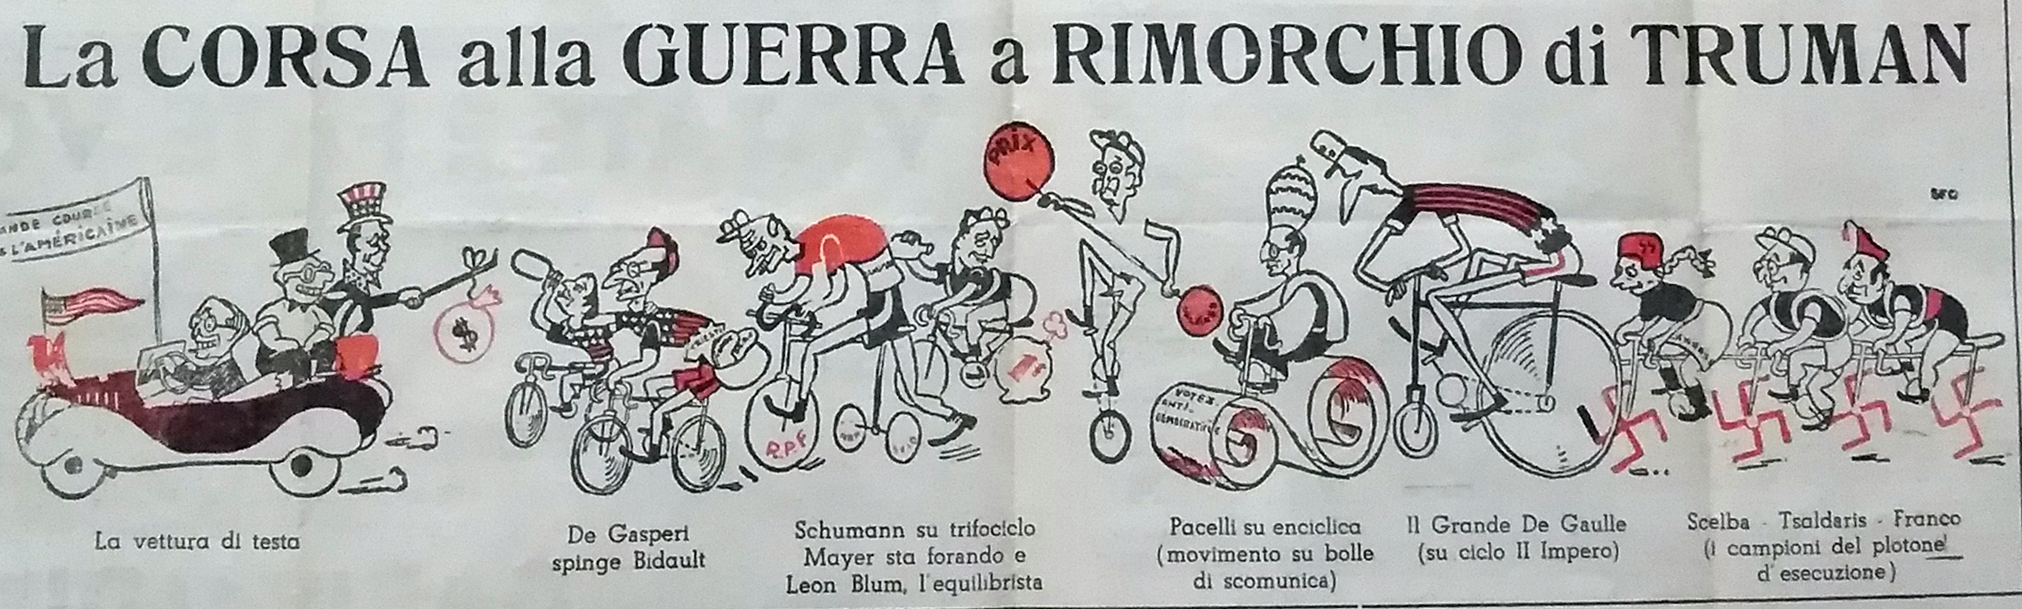 Elezioni del 1948 a Modena. Vignetta pubblicata su "La verità", settimanale della Federazione modenese del PCI.